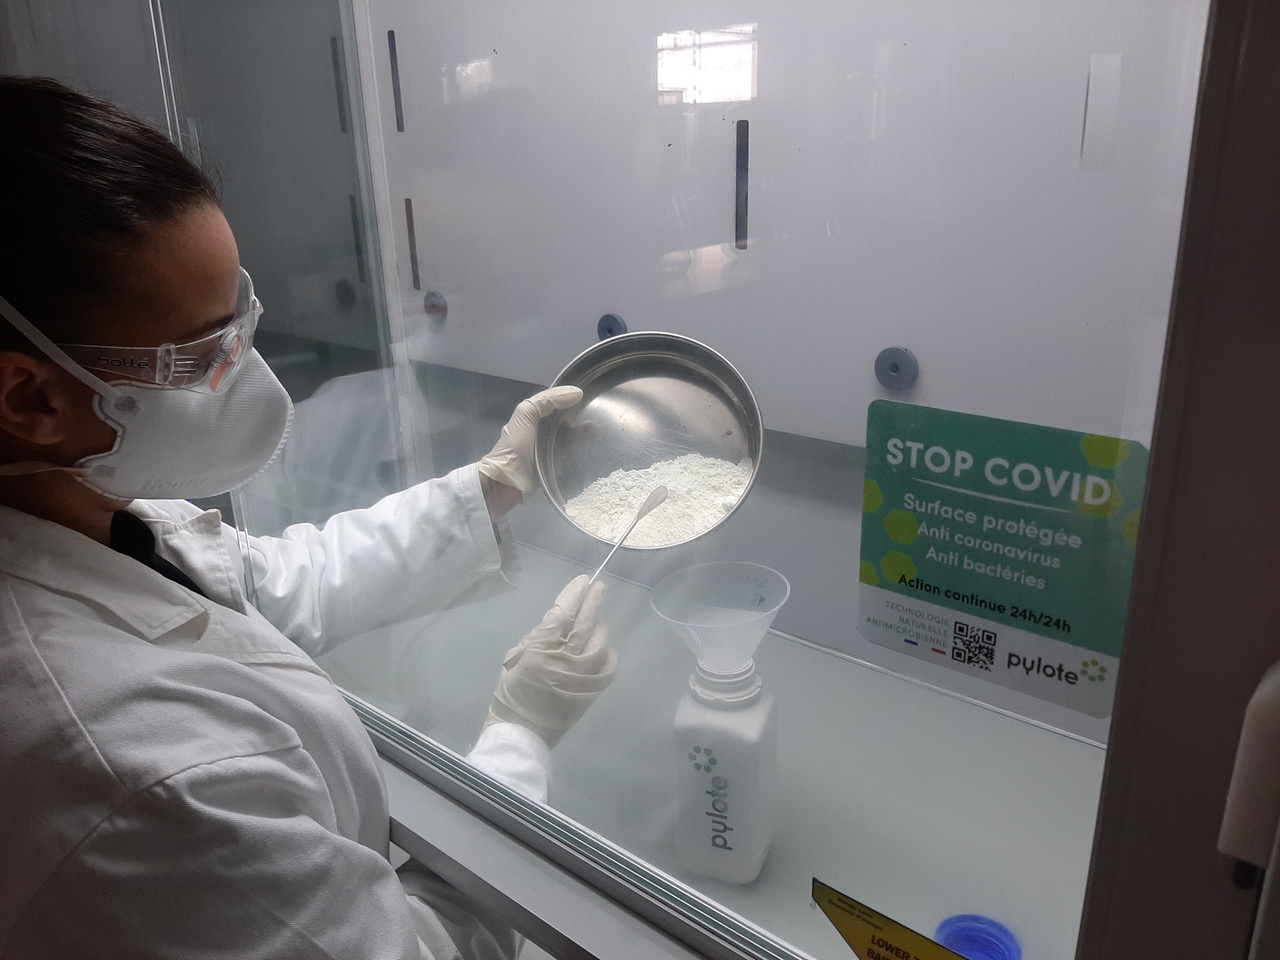 La technologie naturelle antimicrobienne de Pylote a contribué à la lutte contre la pandémie liée à la Covid-19